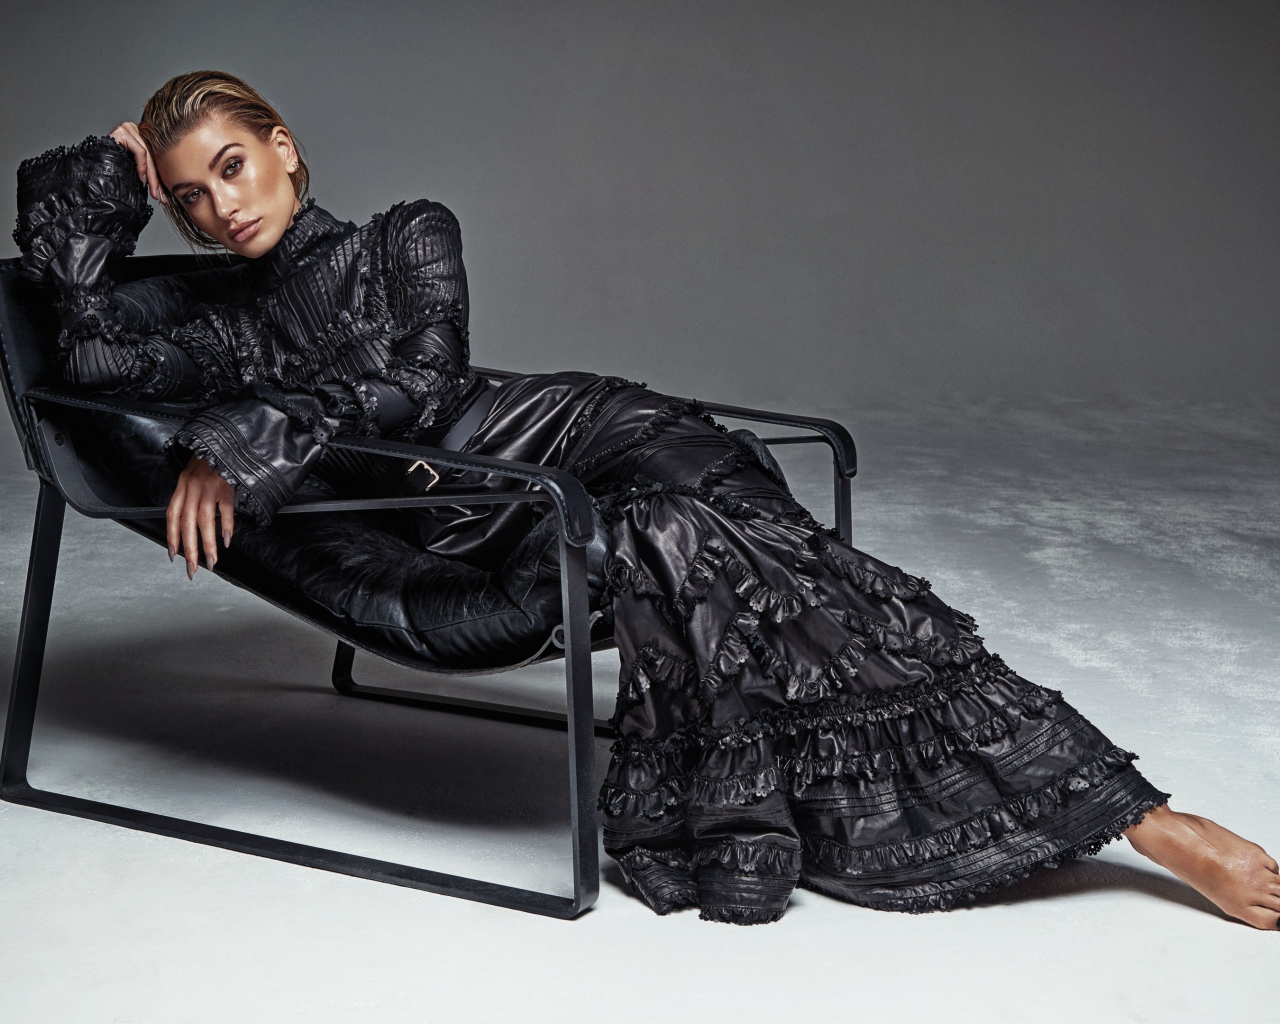 Beautiful model Hayley Baldwin in a long dress lies in an armchair